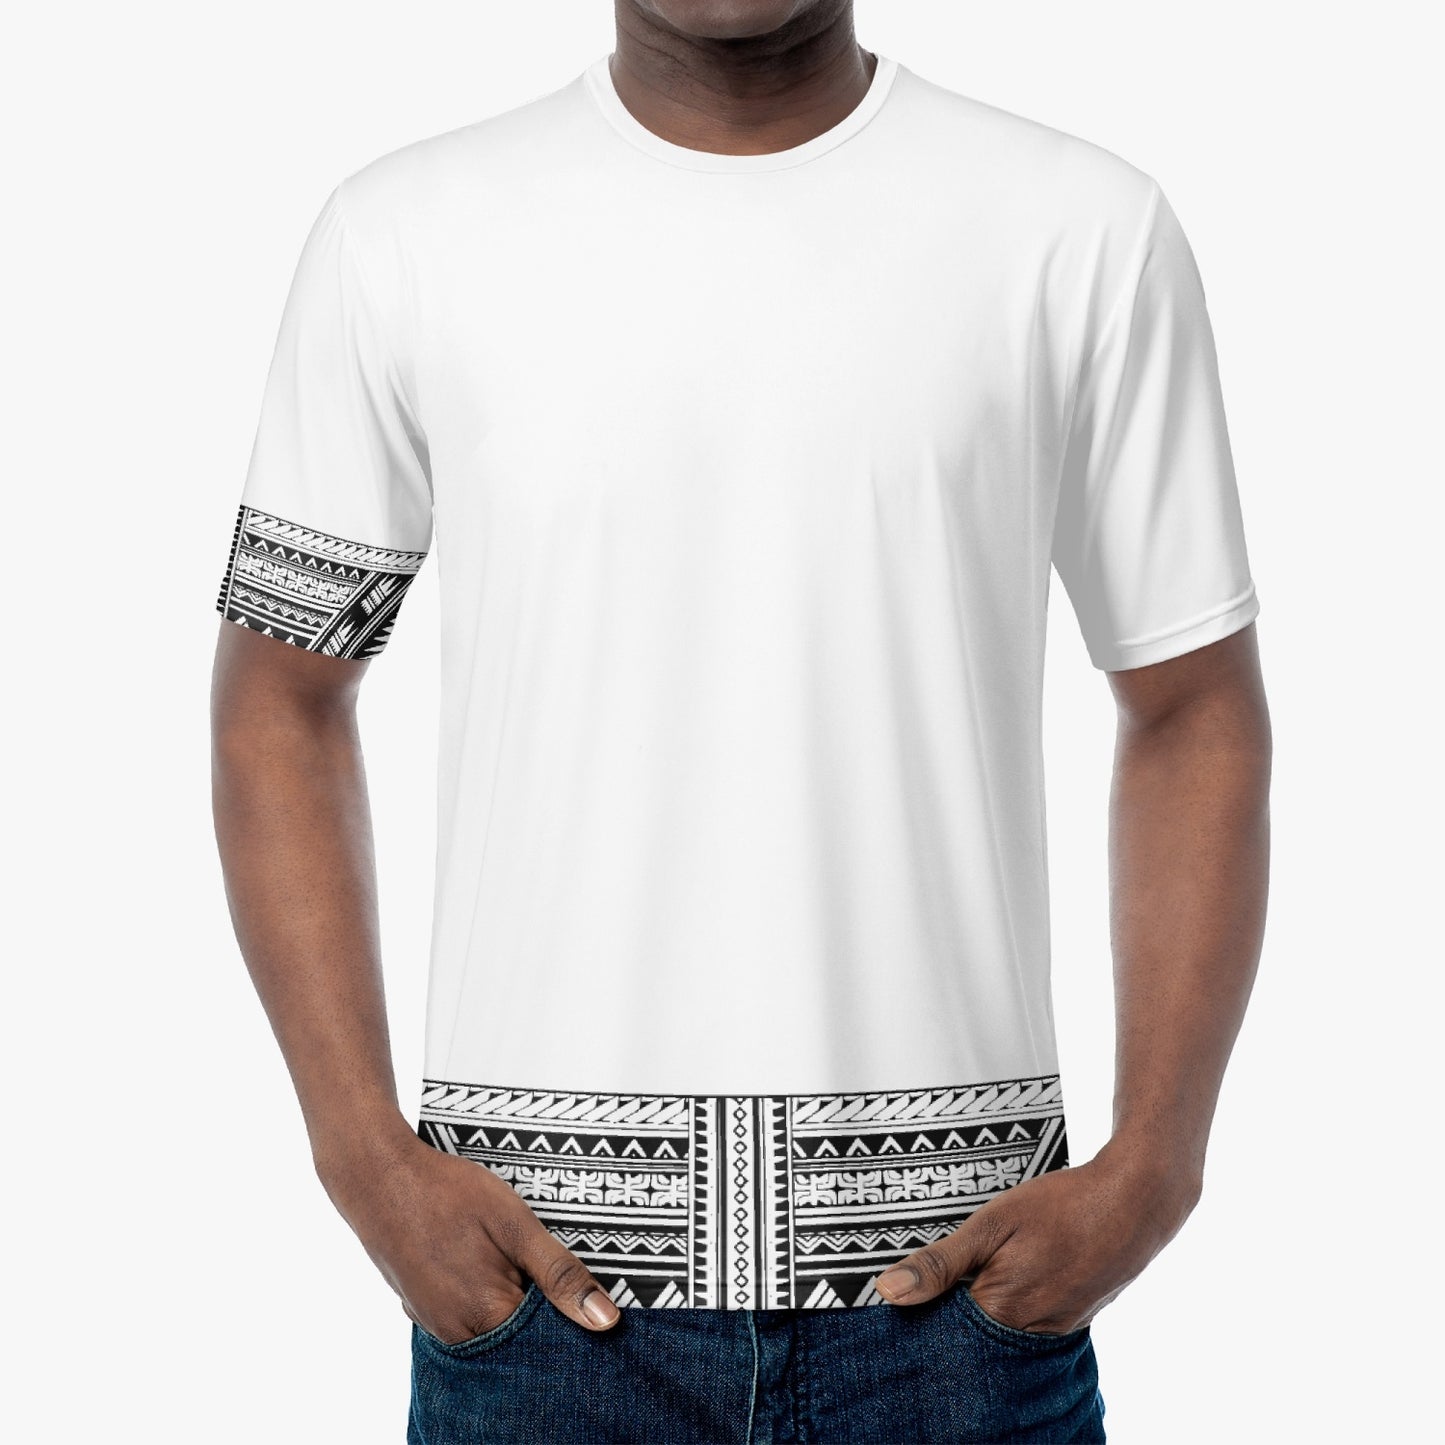 Mālofie - T-Shirt